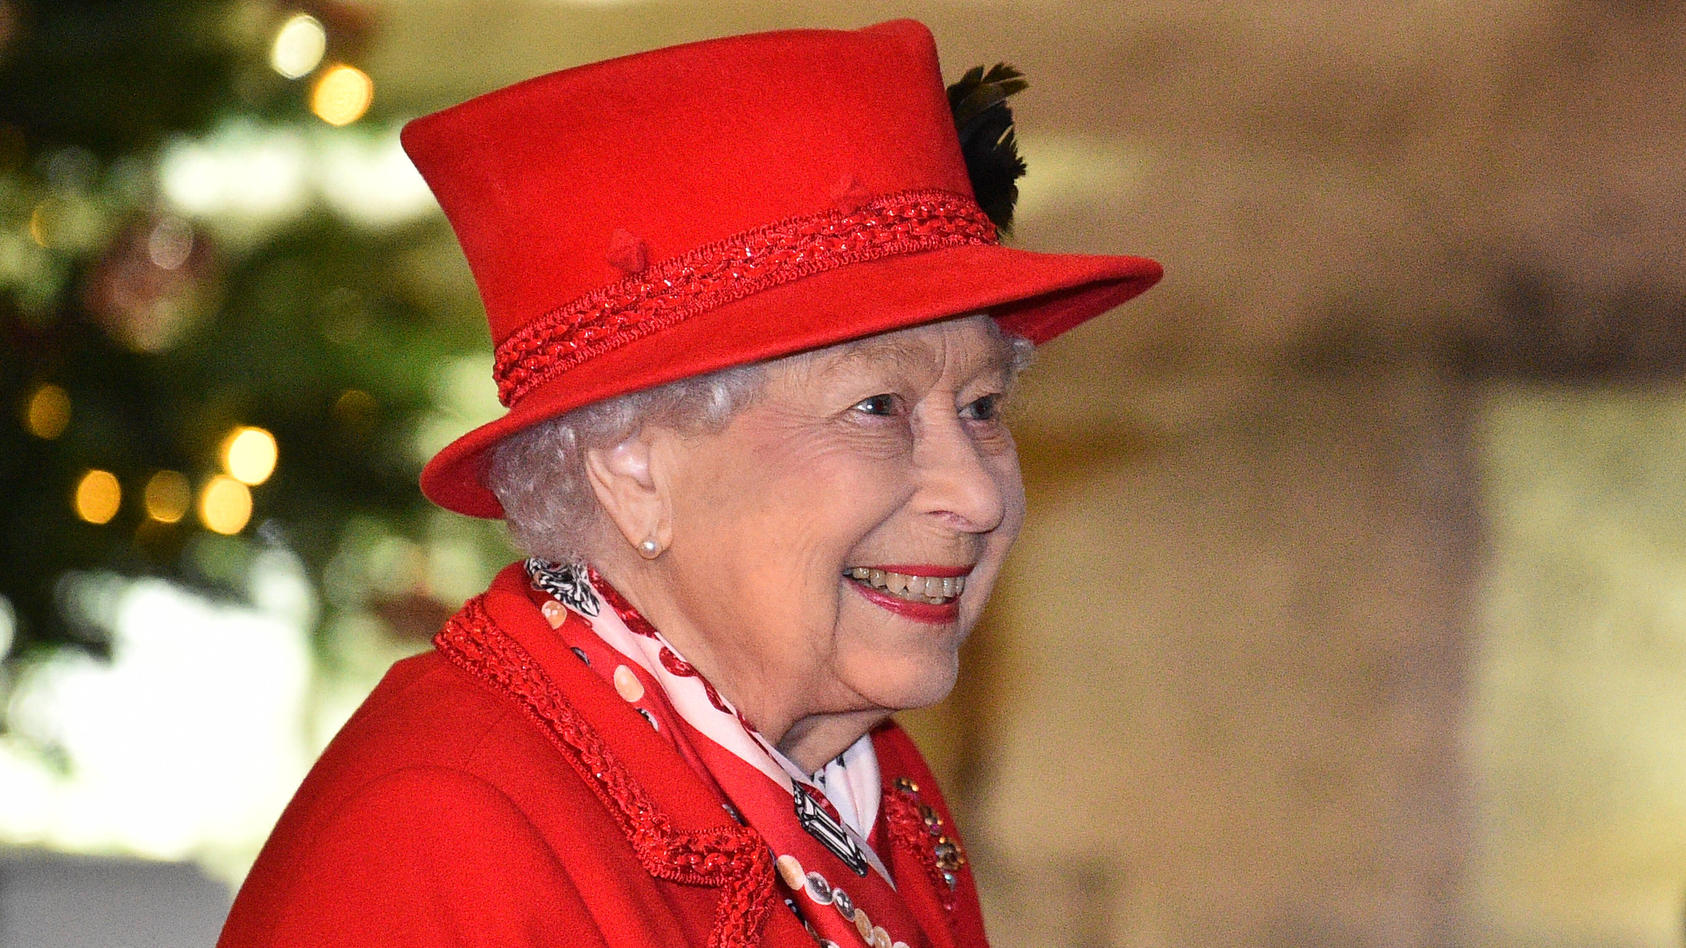 Nach ihrer Weihnachtsansprache an das Volk meldet sich Queen Elizabeth II. auch nochmal zum Start ins neue Jahr mit einem emotionalen Statement.